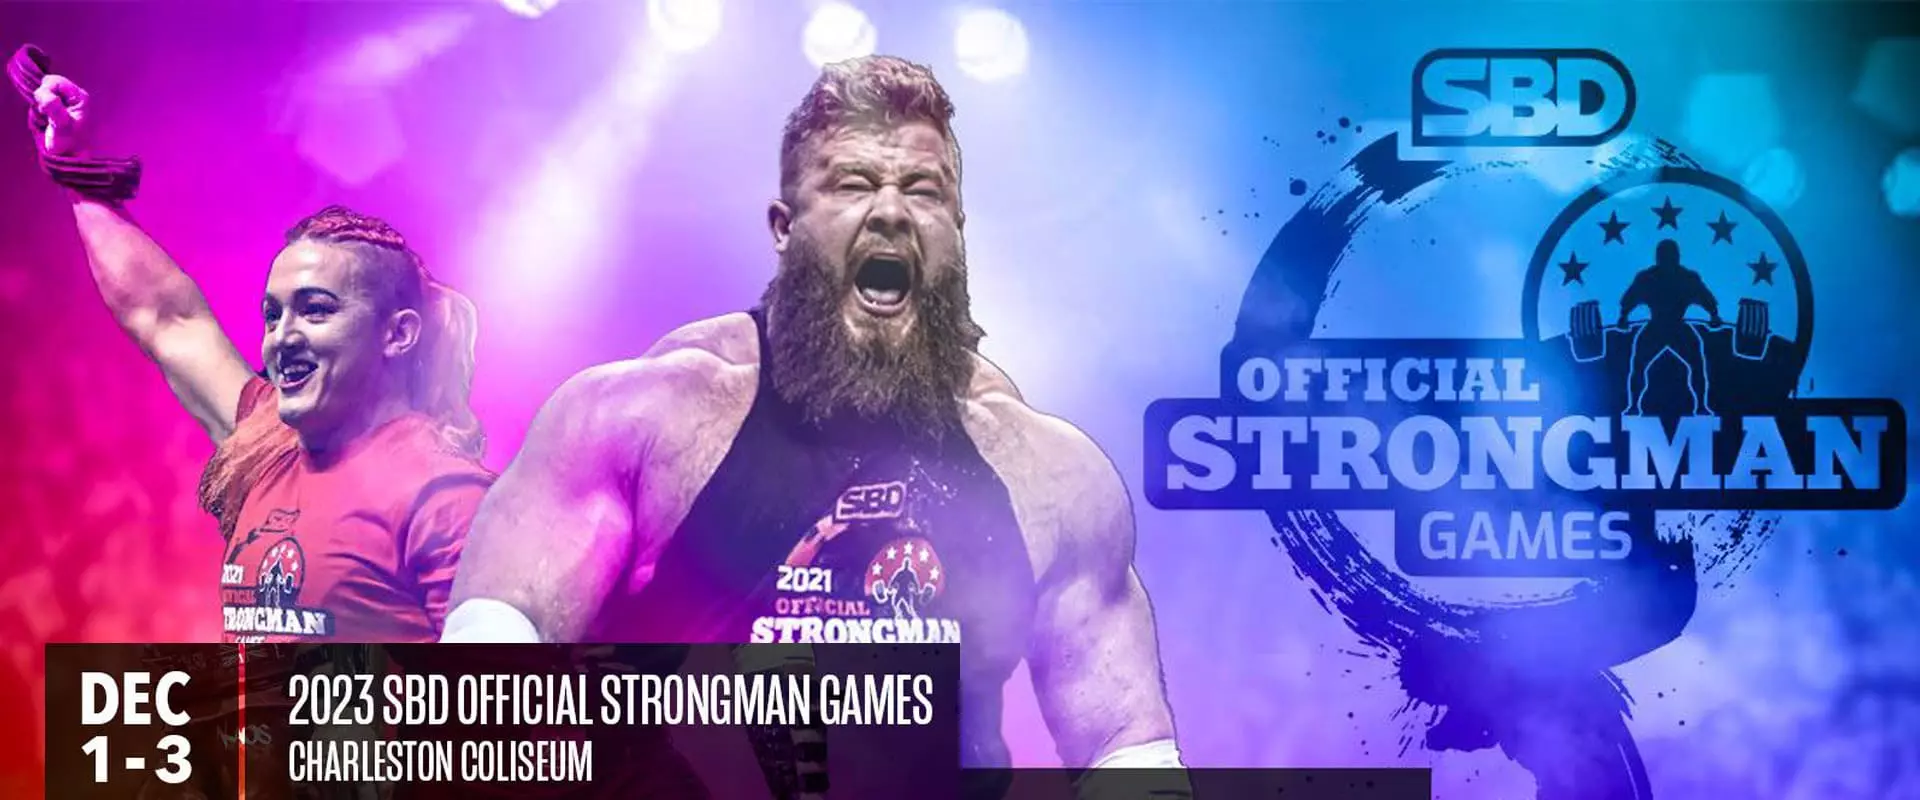 Official Strongman Games 2023